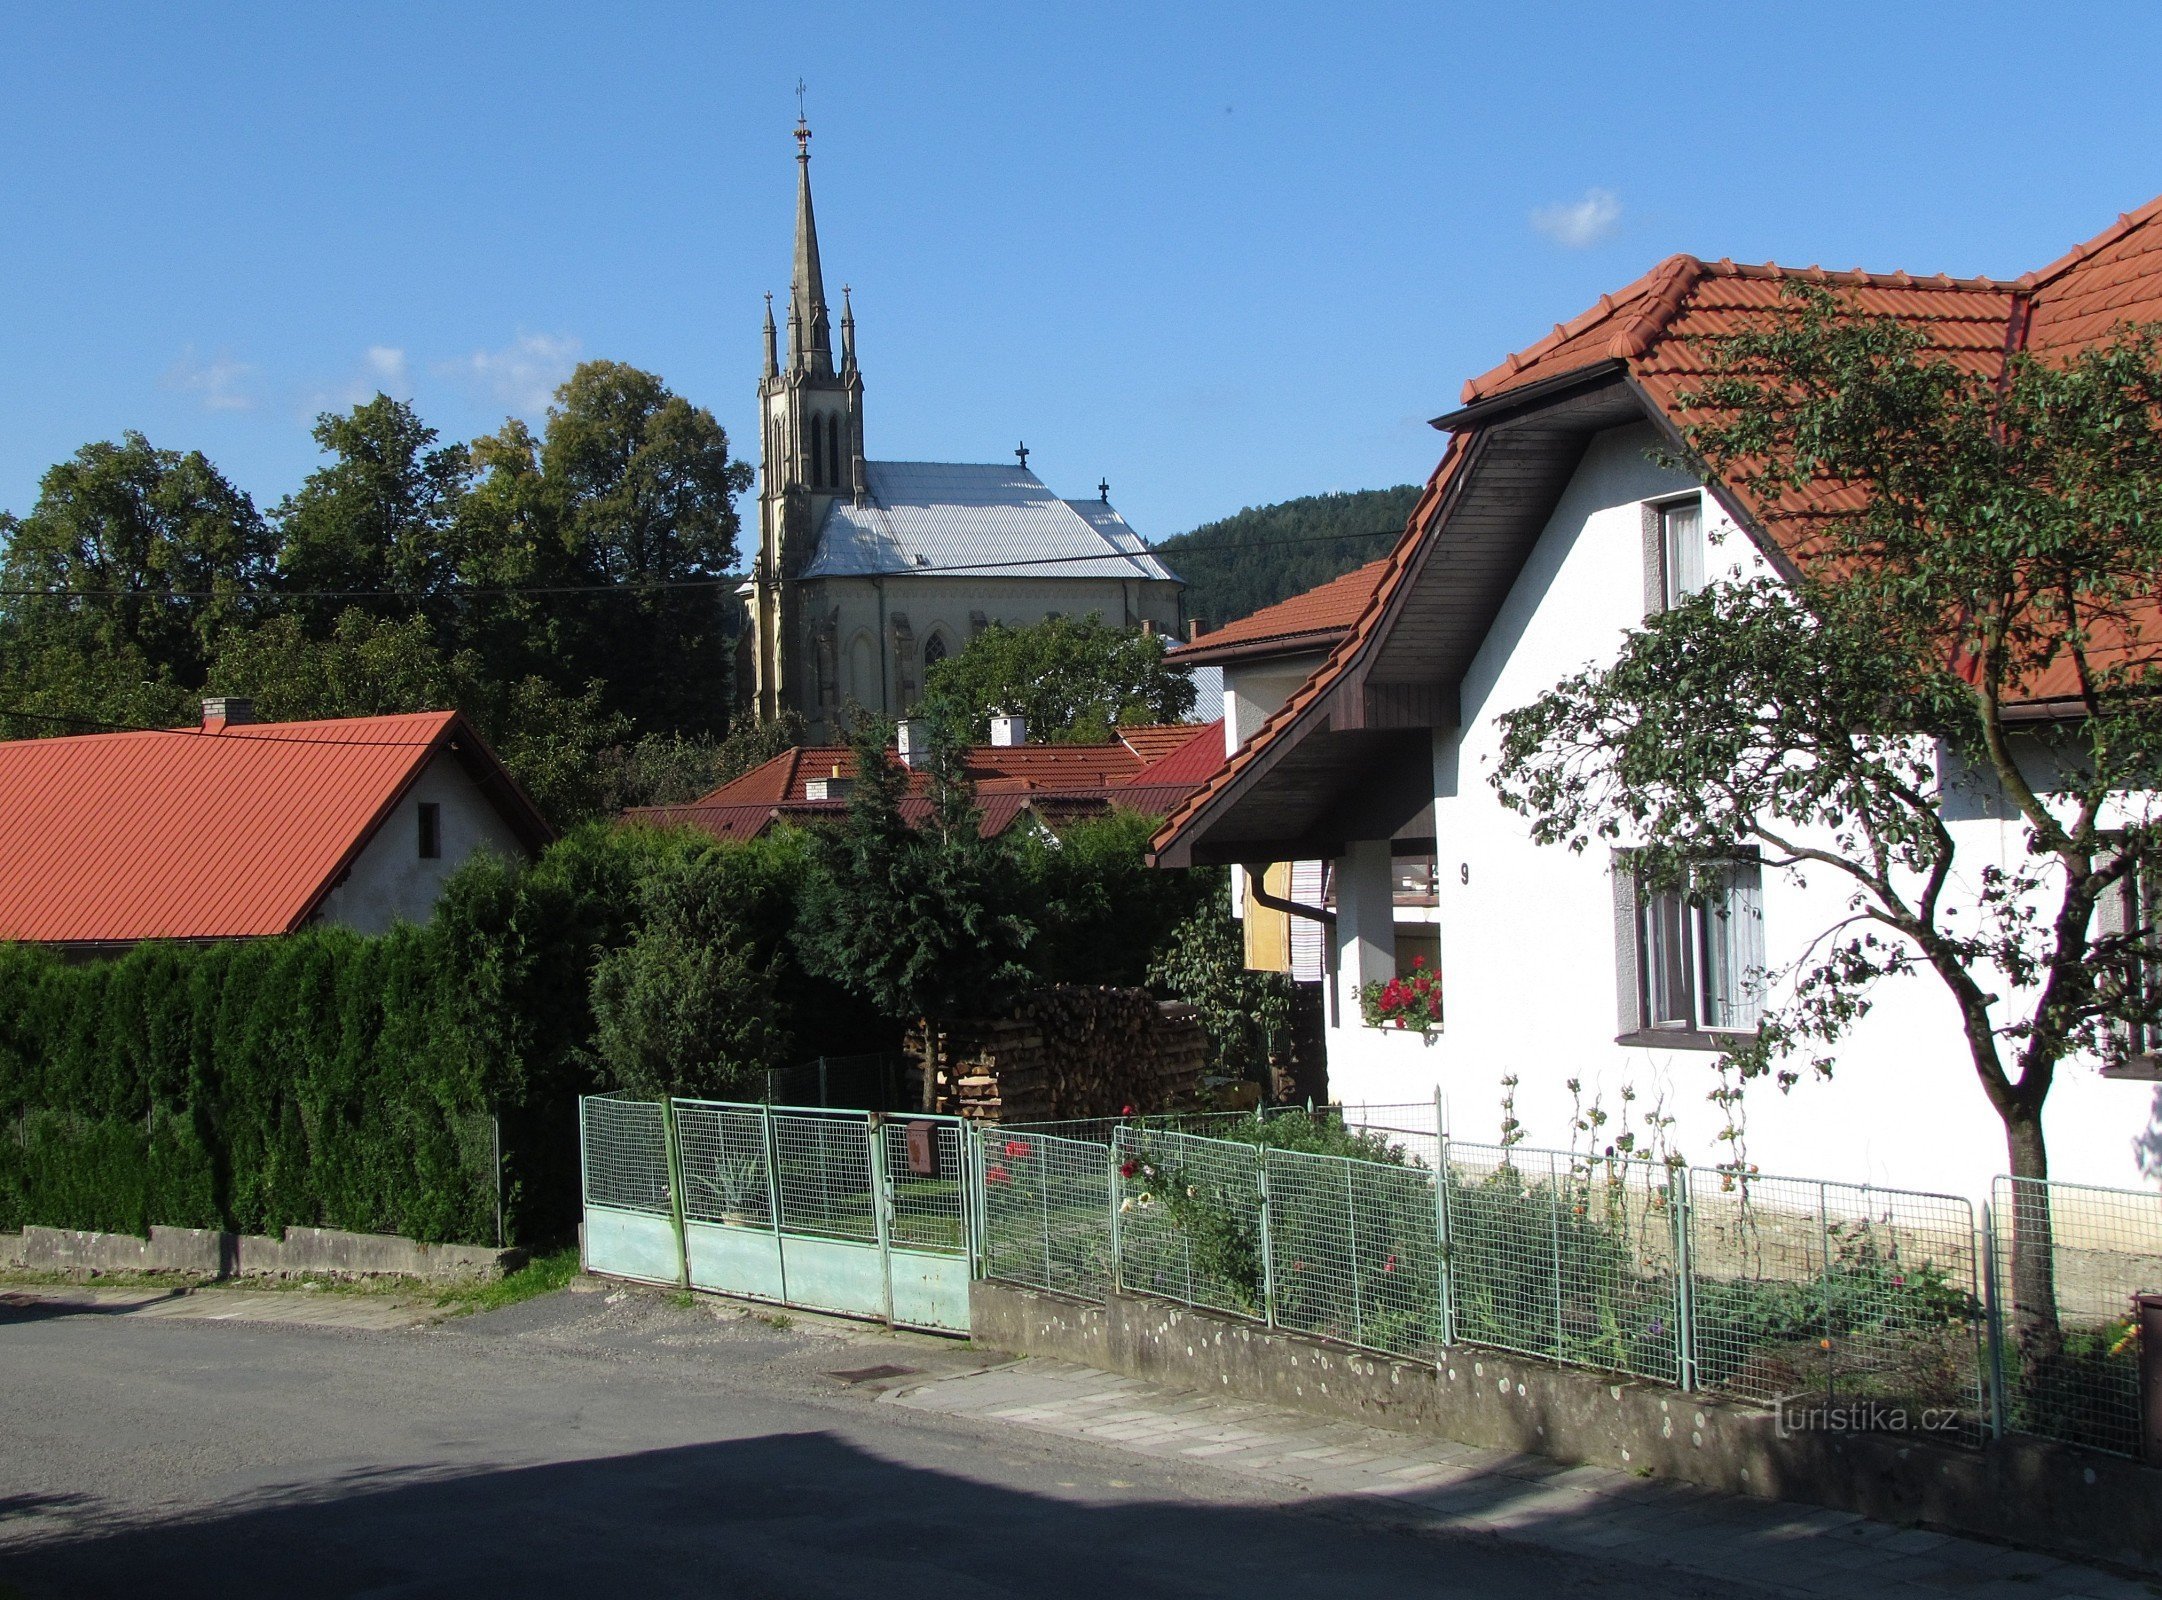 Bratřejov - nhà thờ Thánh Cyril và Methodius